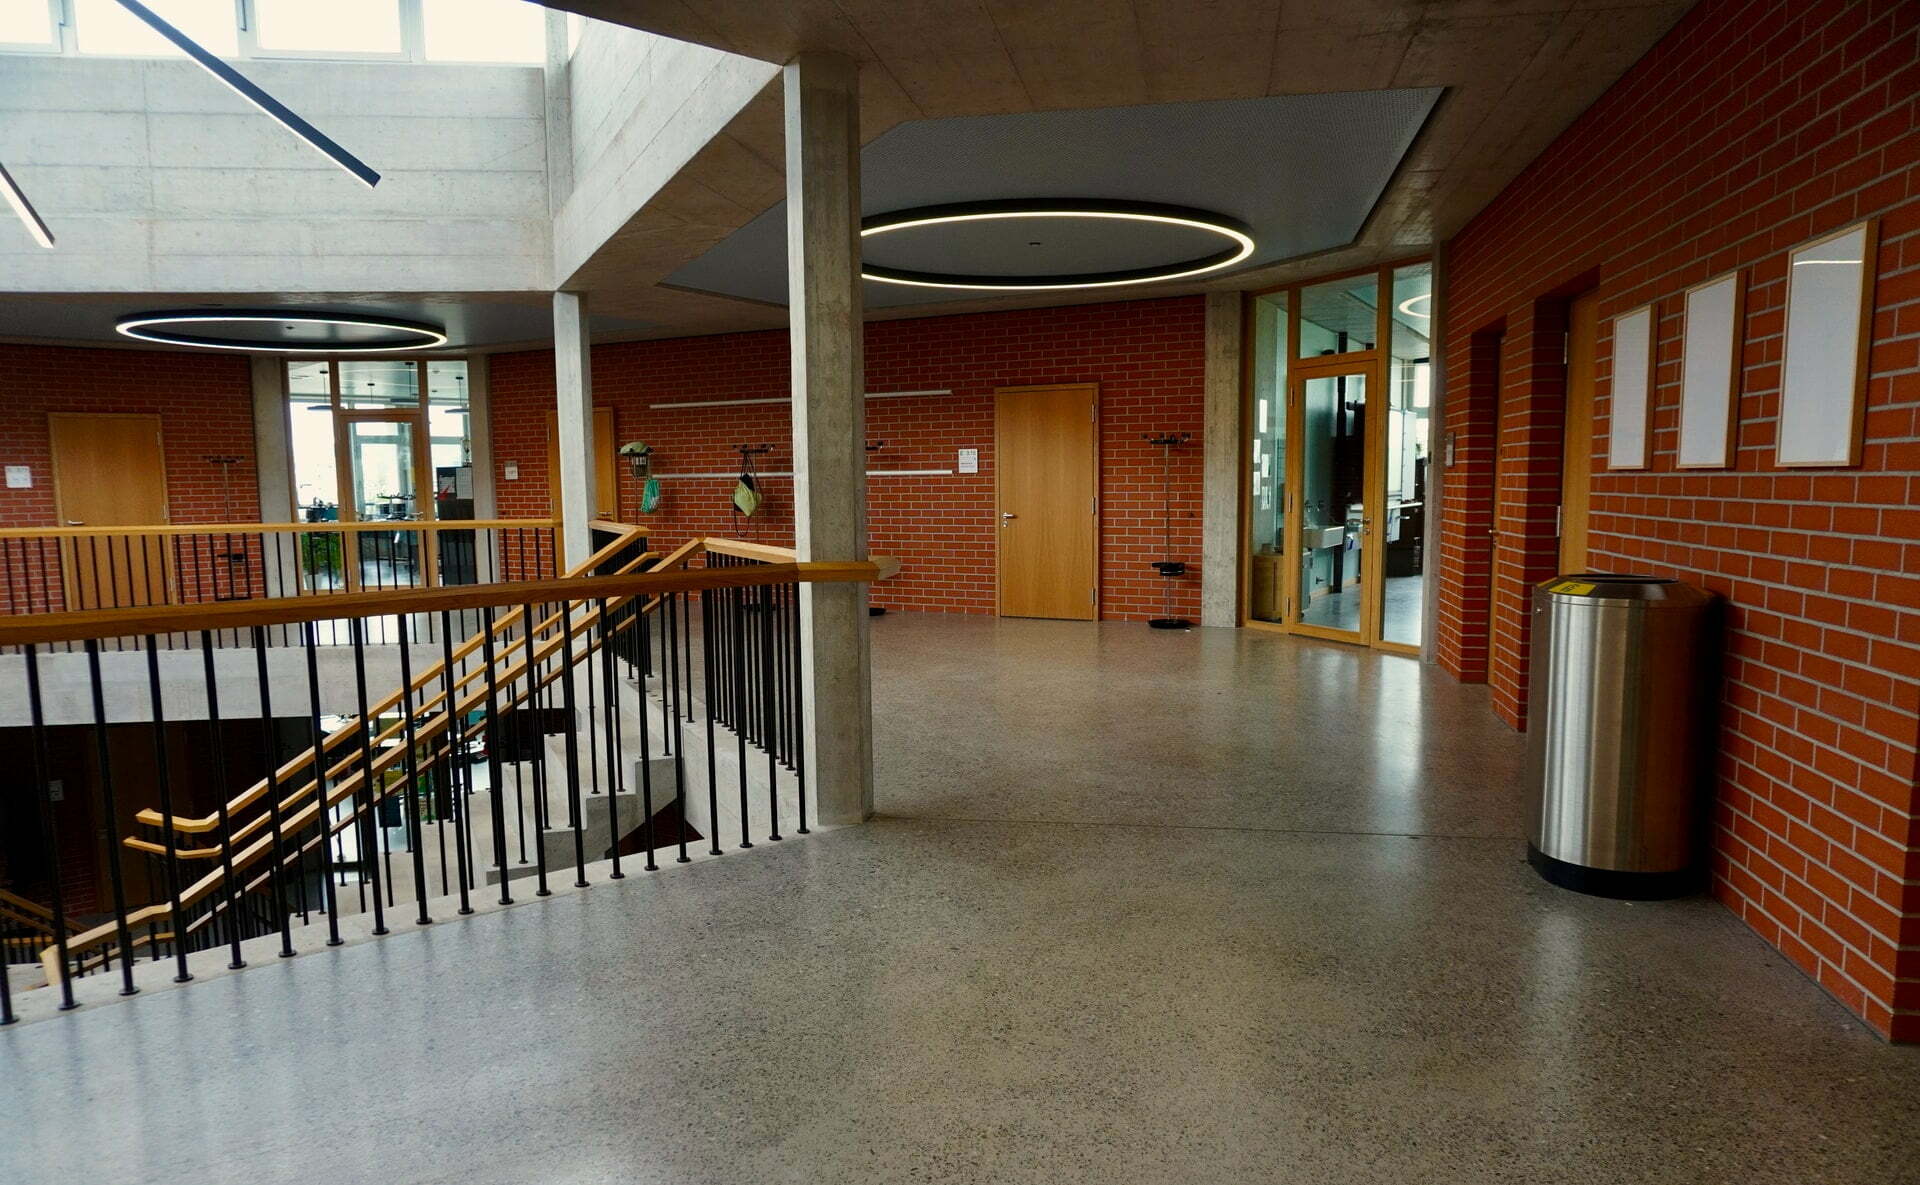 interior of school building